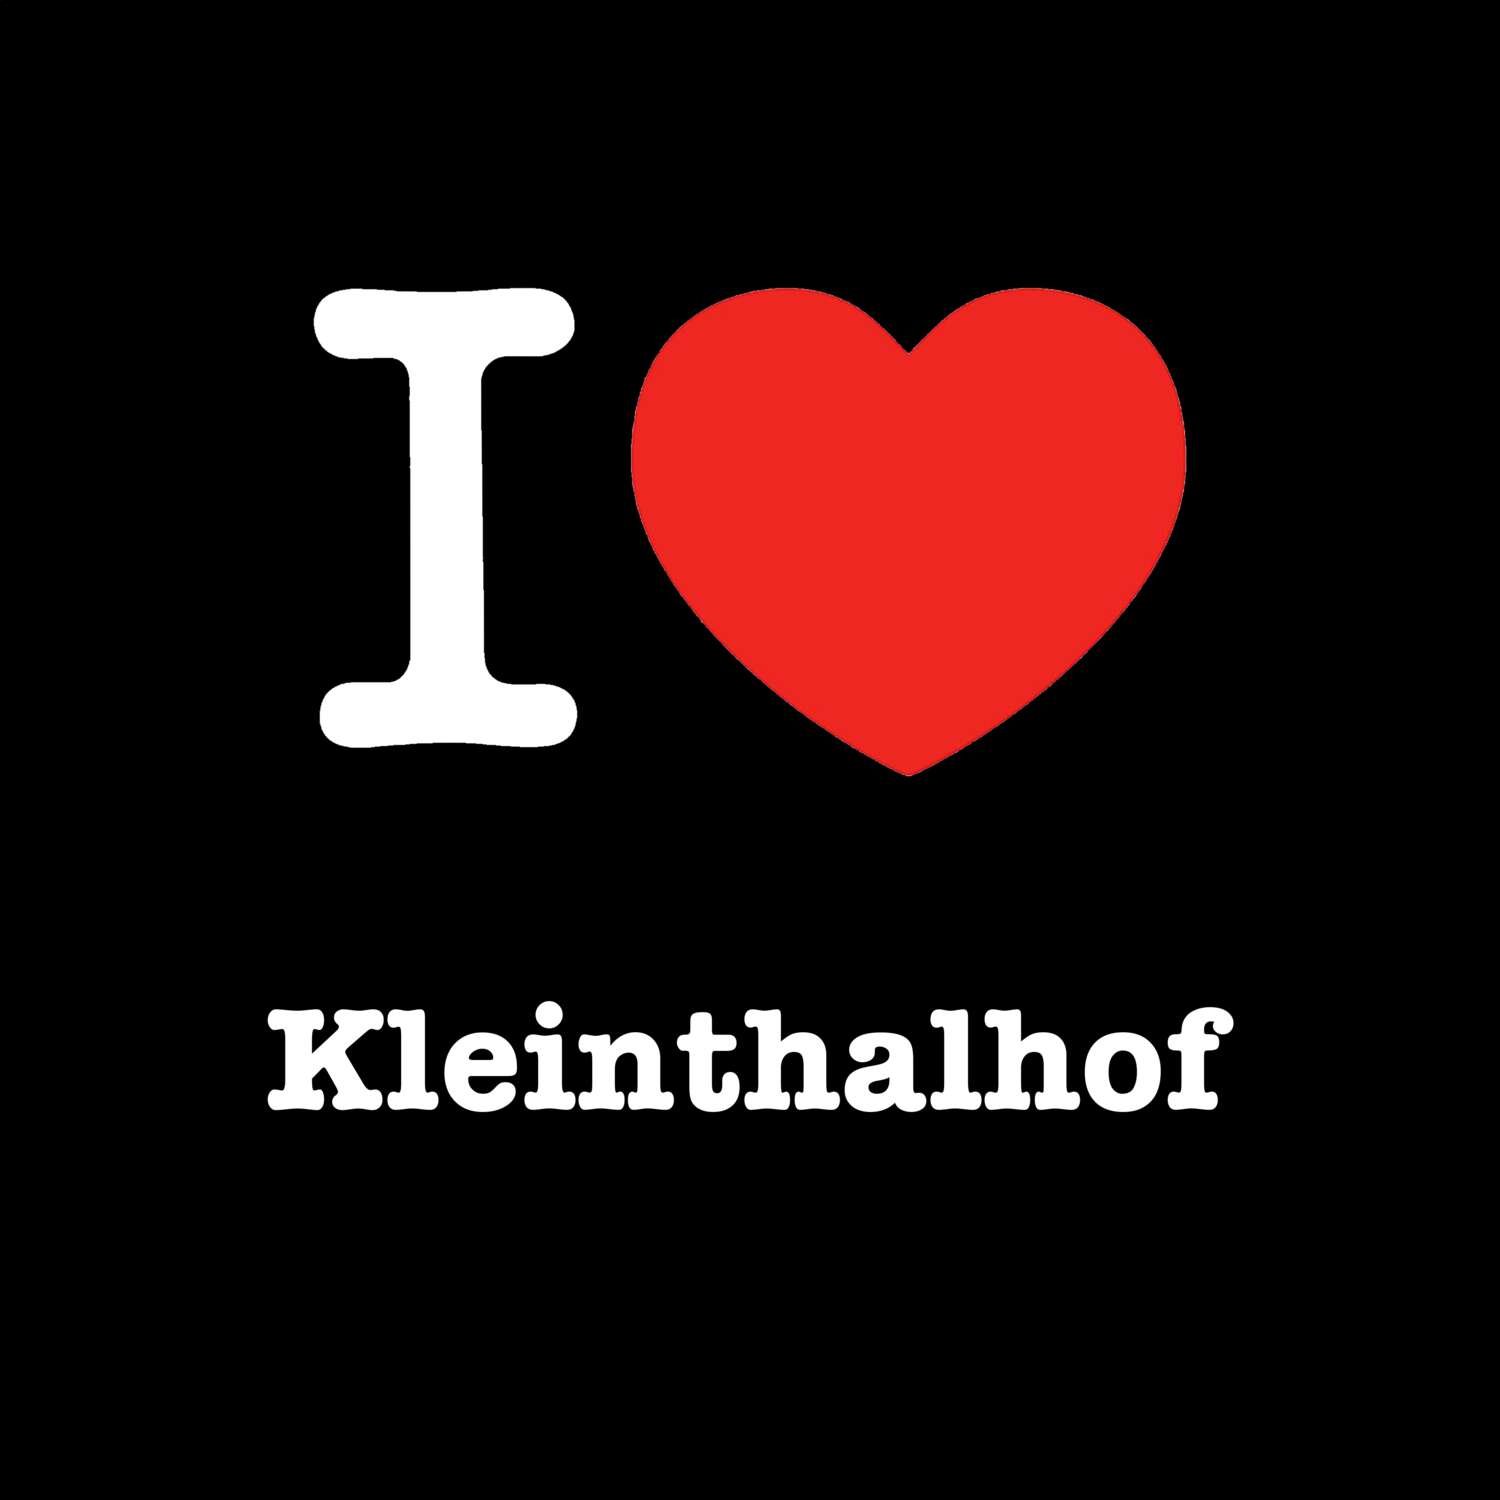 Kleinthalhof T-Shirt »I love«